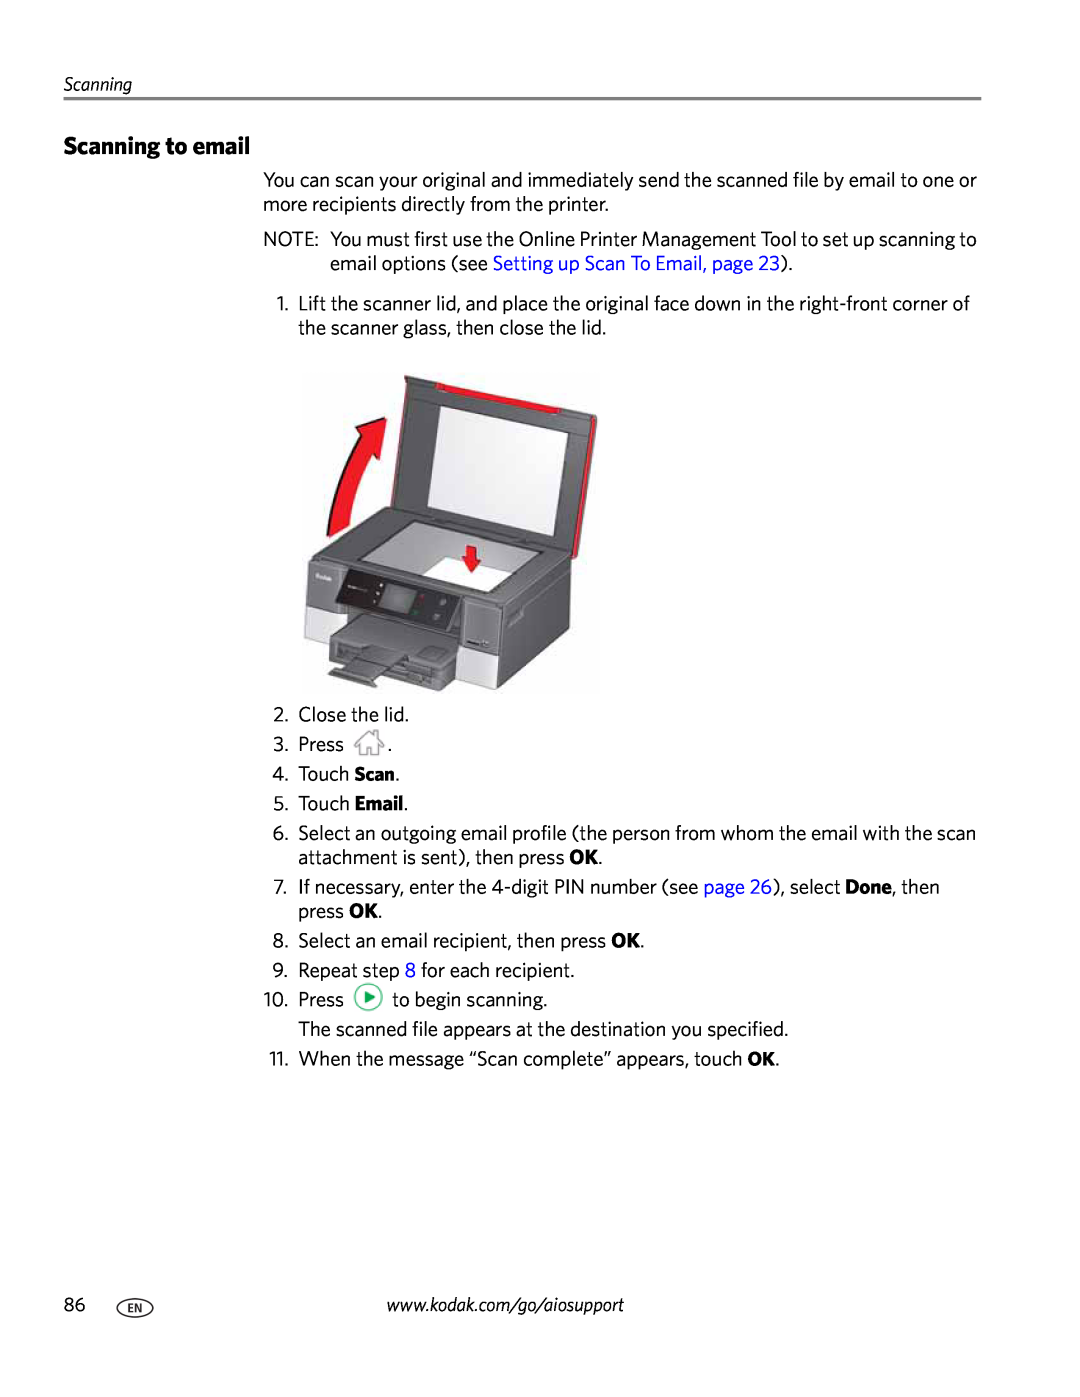 Kodak 7.1 manual Scanning to email 